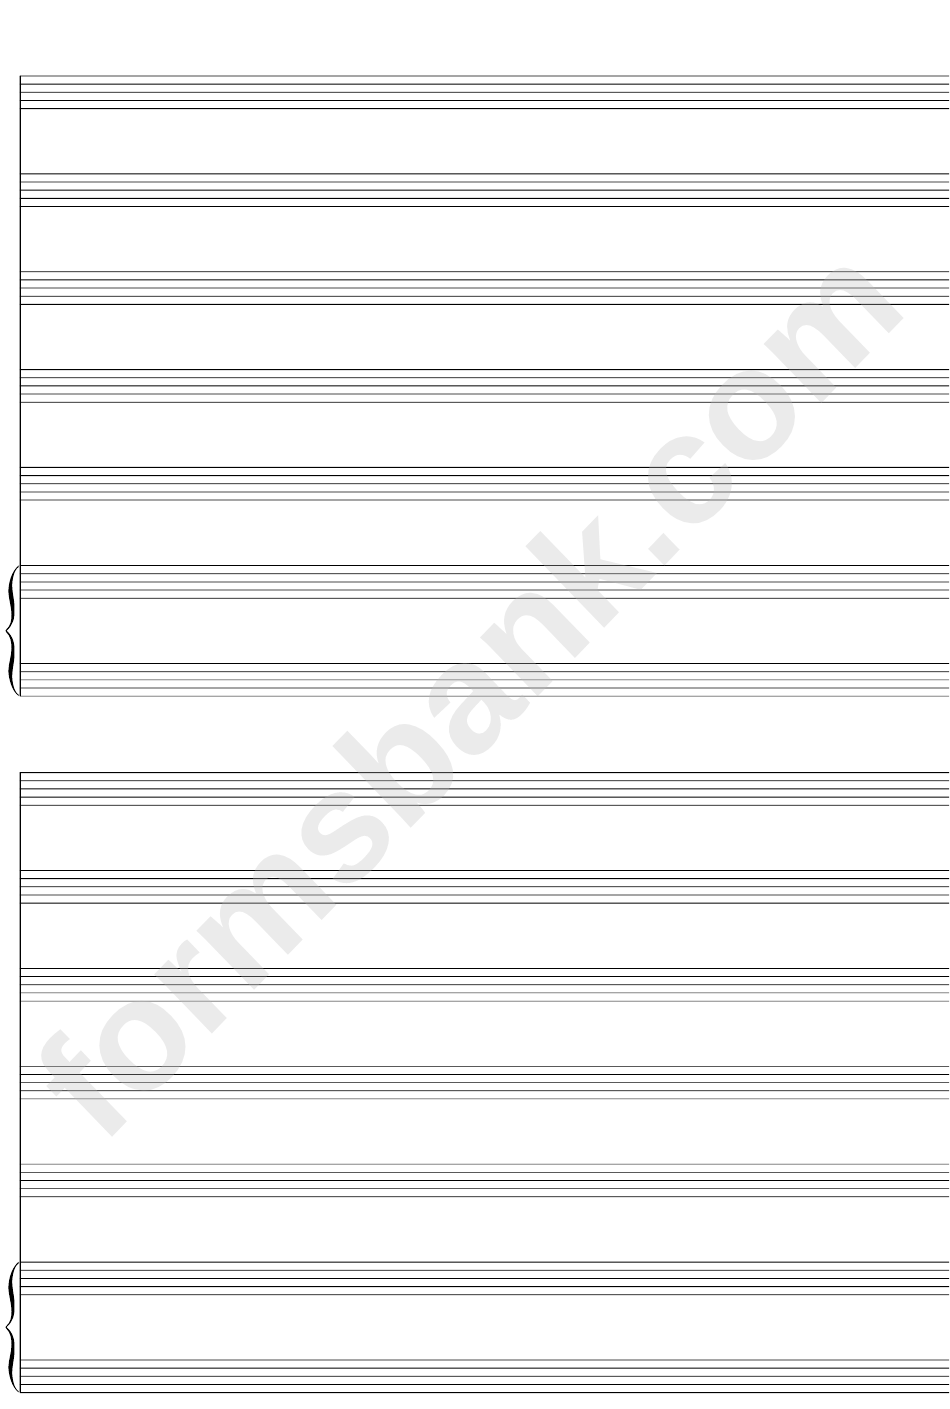 Keyboard + Five, Blank Clef (A4 Portrait) Blank Sheet Music